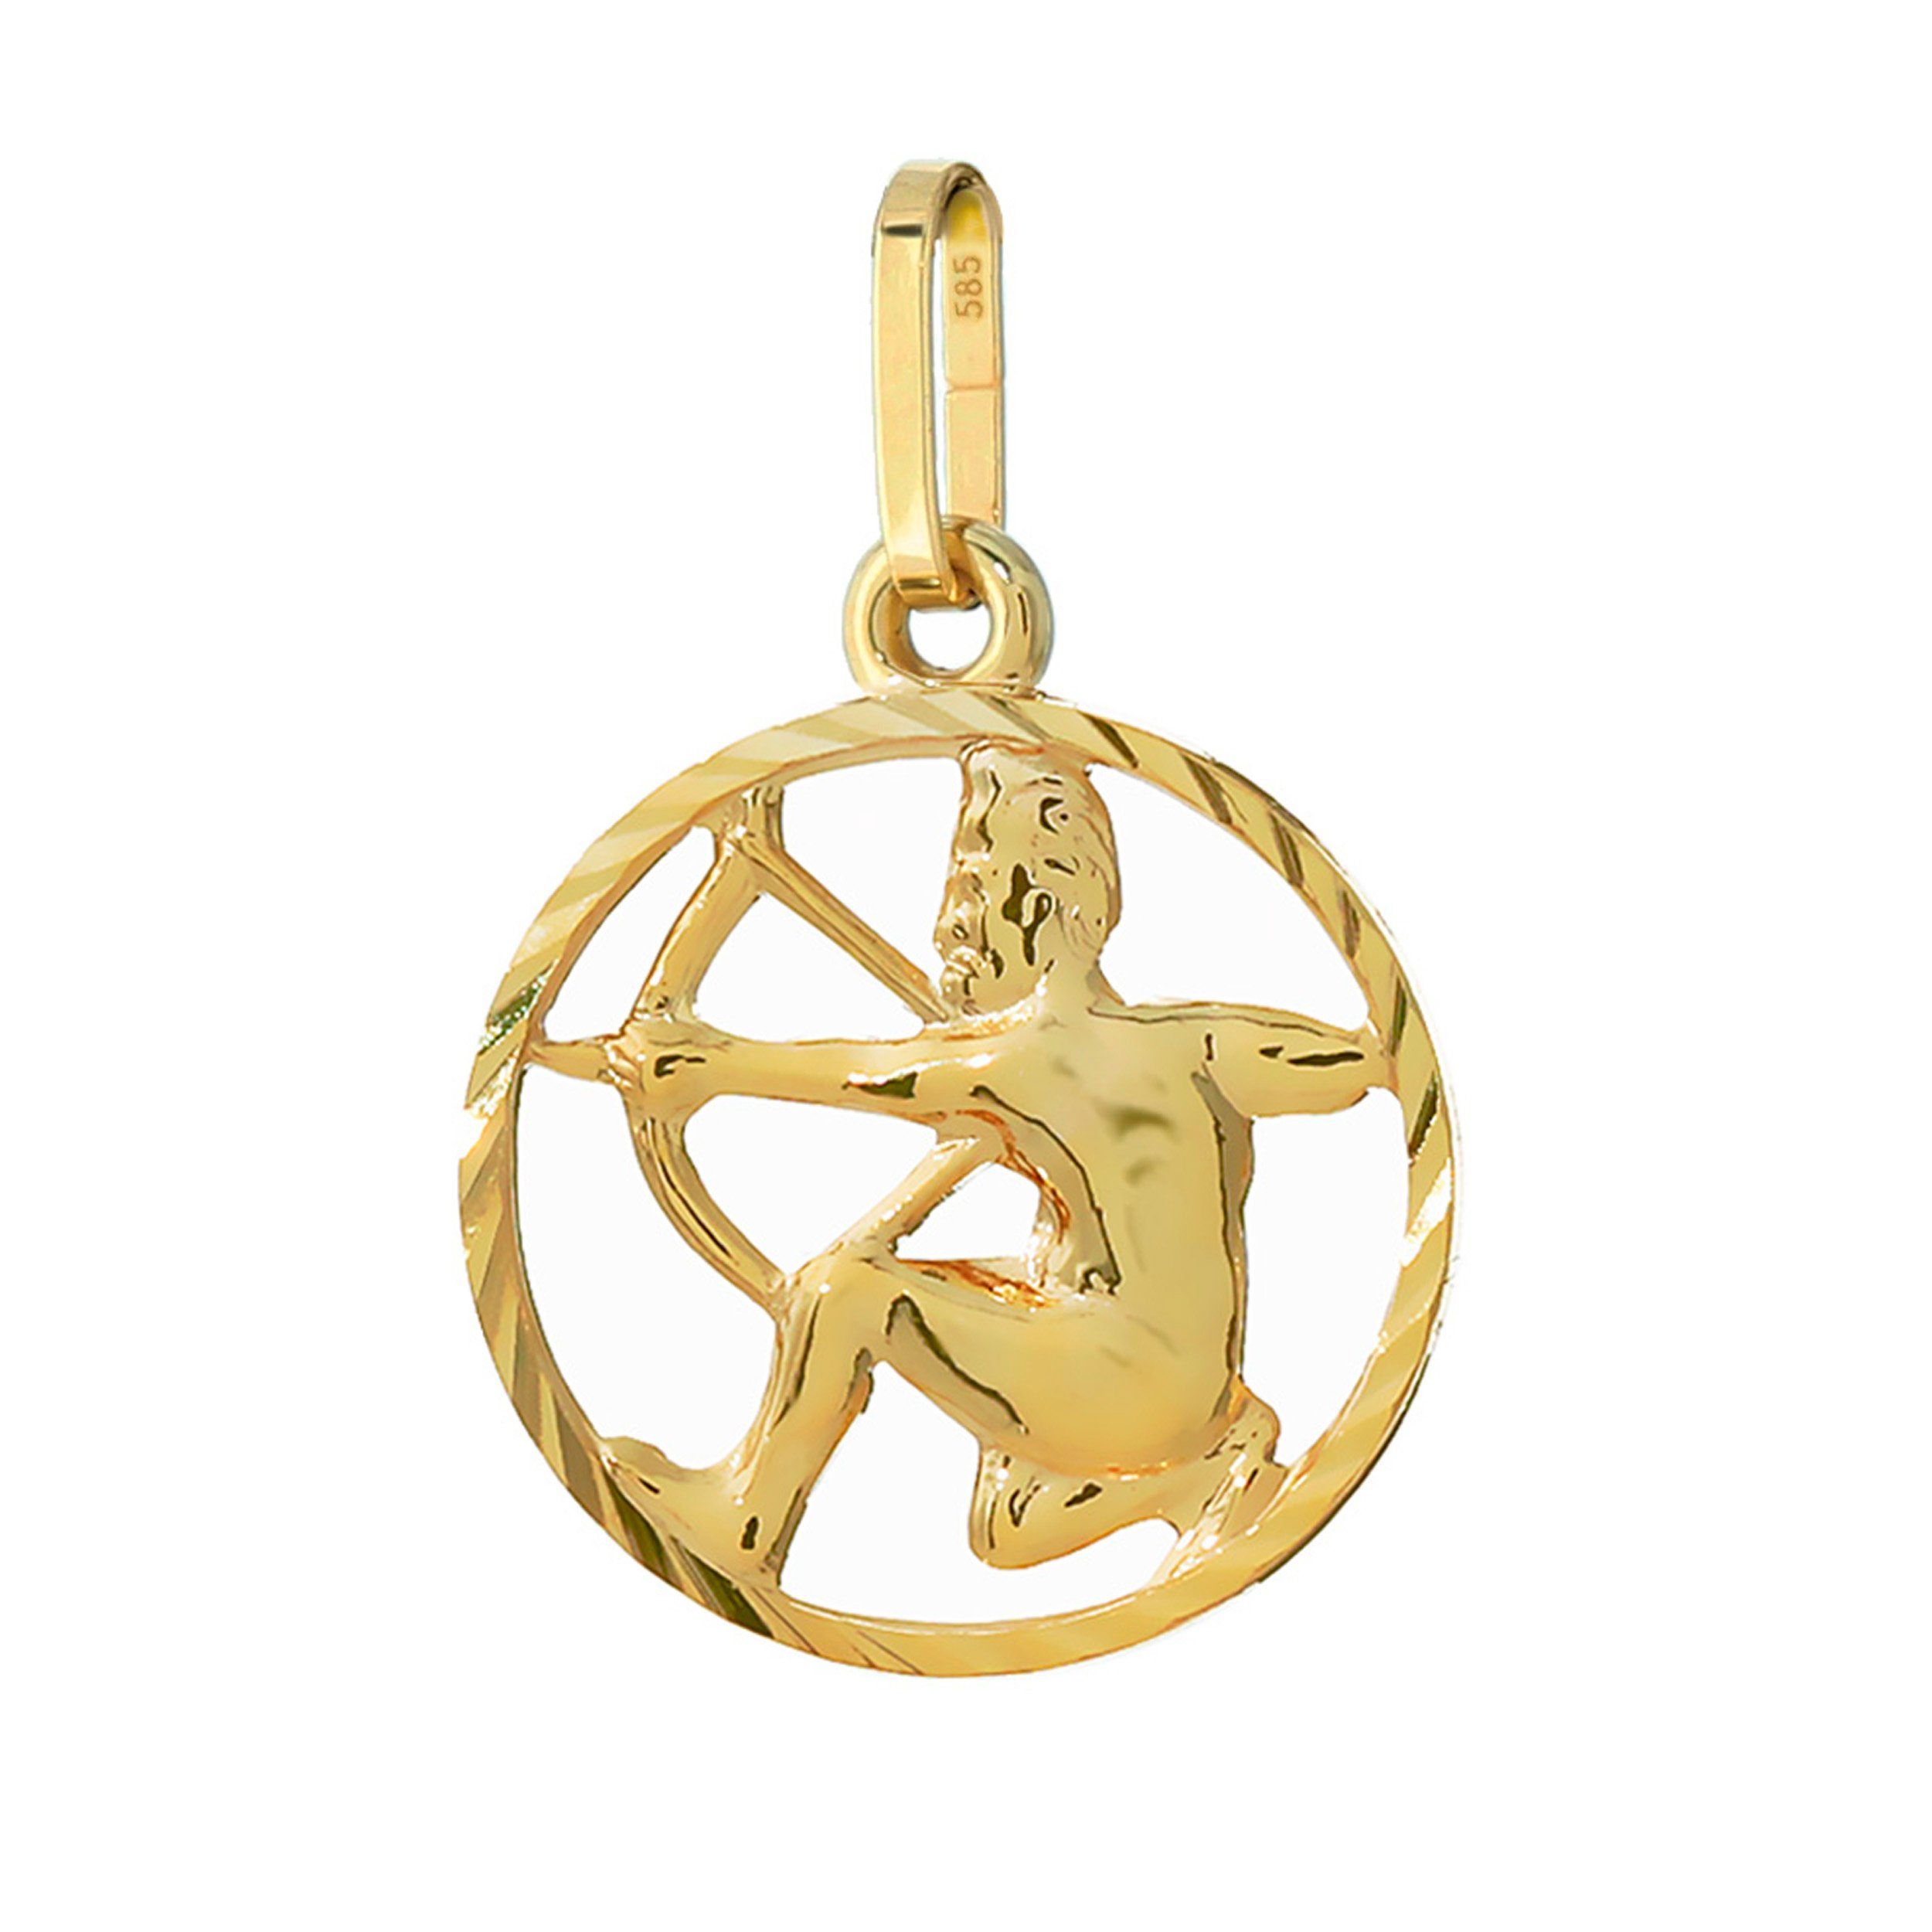 NKlaus Kettenanhänger Schutze Sternzeichen 585 Gelb Gold 14 Karat 15mm Kettenanhänger Horosk | Kettenanhänger